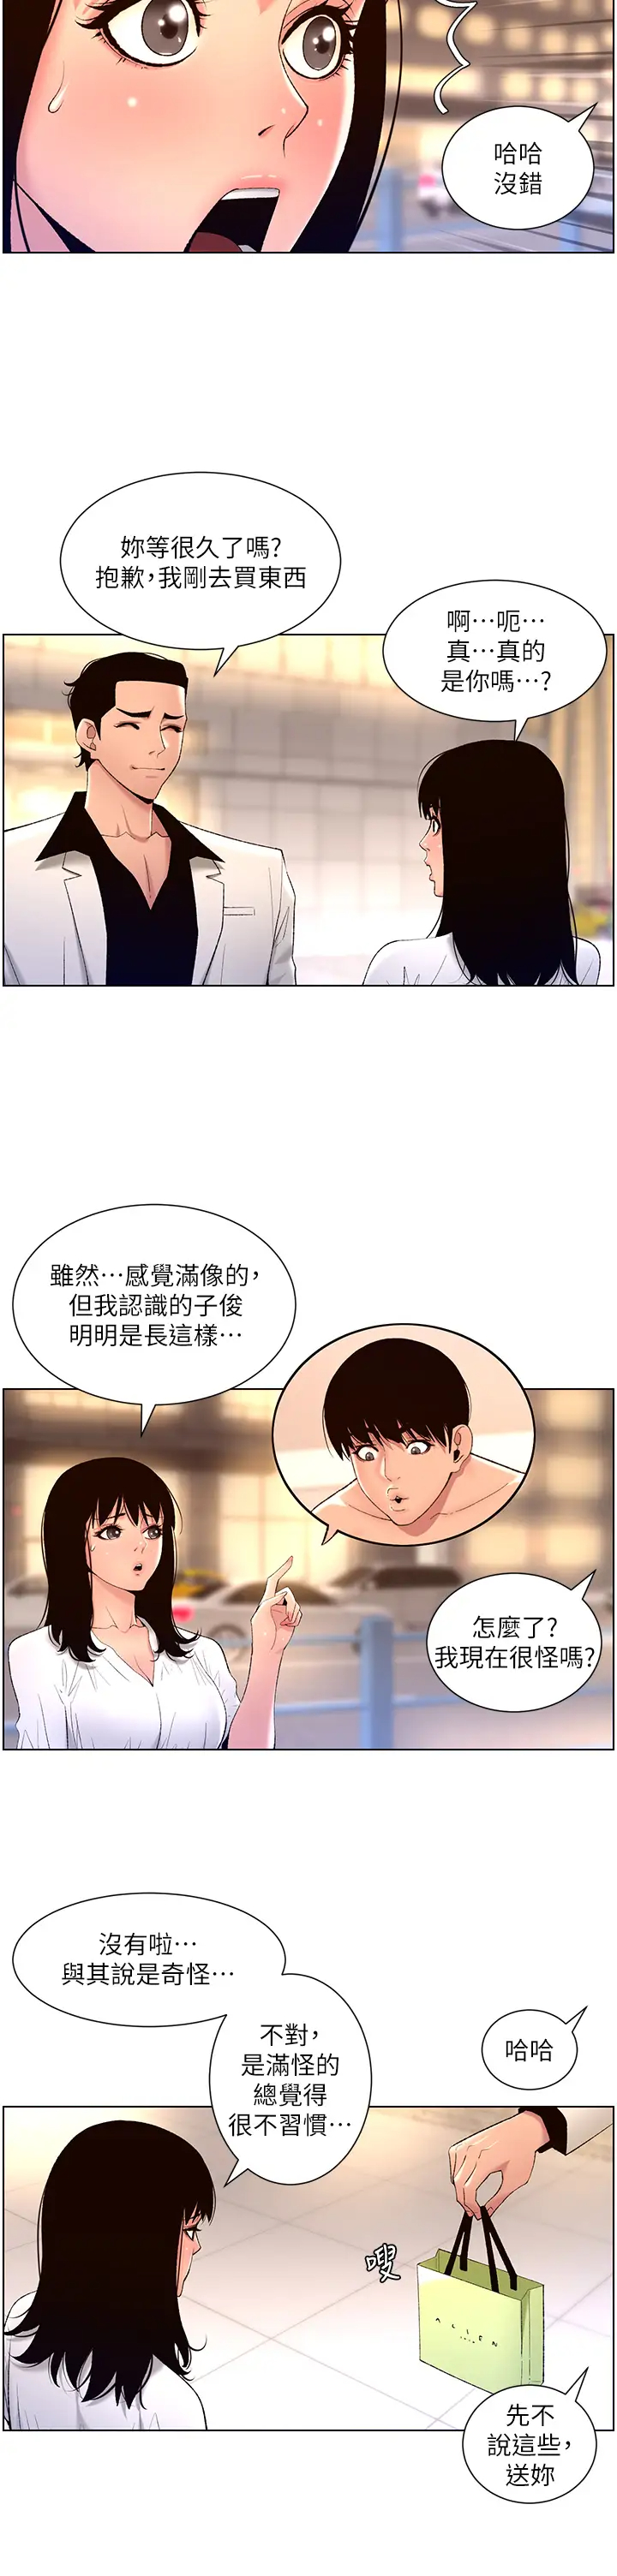 韩国污漫画 帝王App 第27话 让正妹柜姊爽到上天堂 20